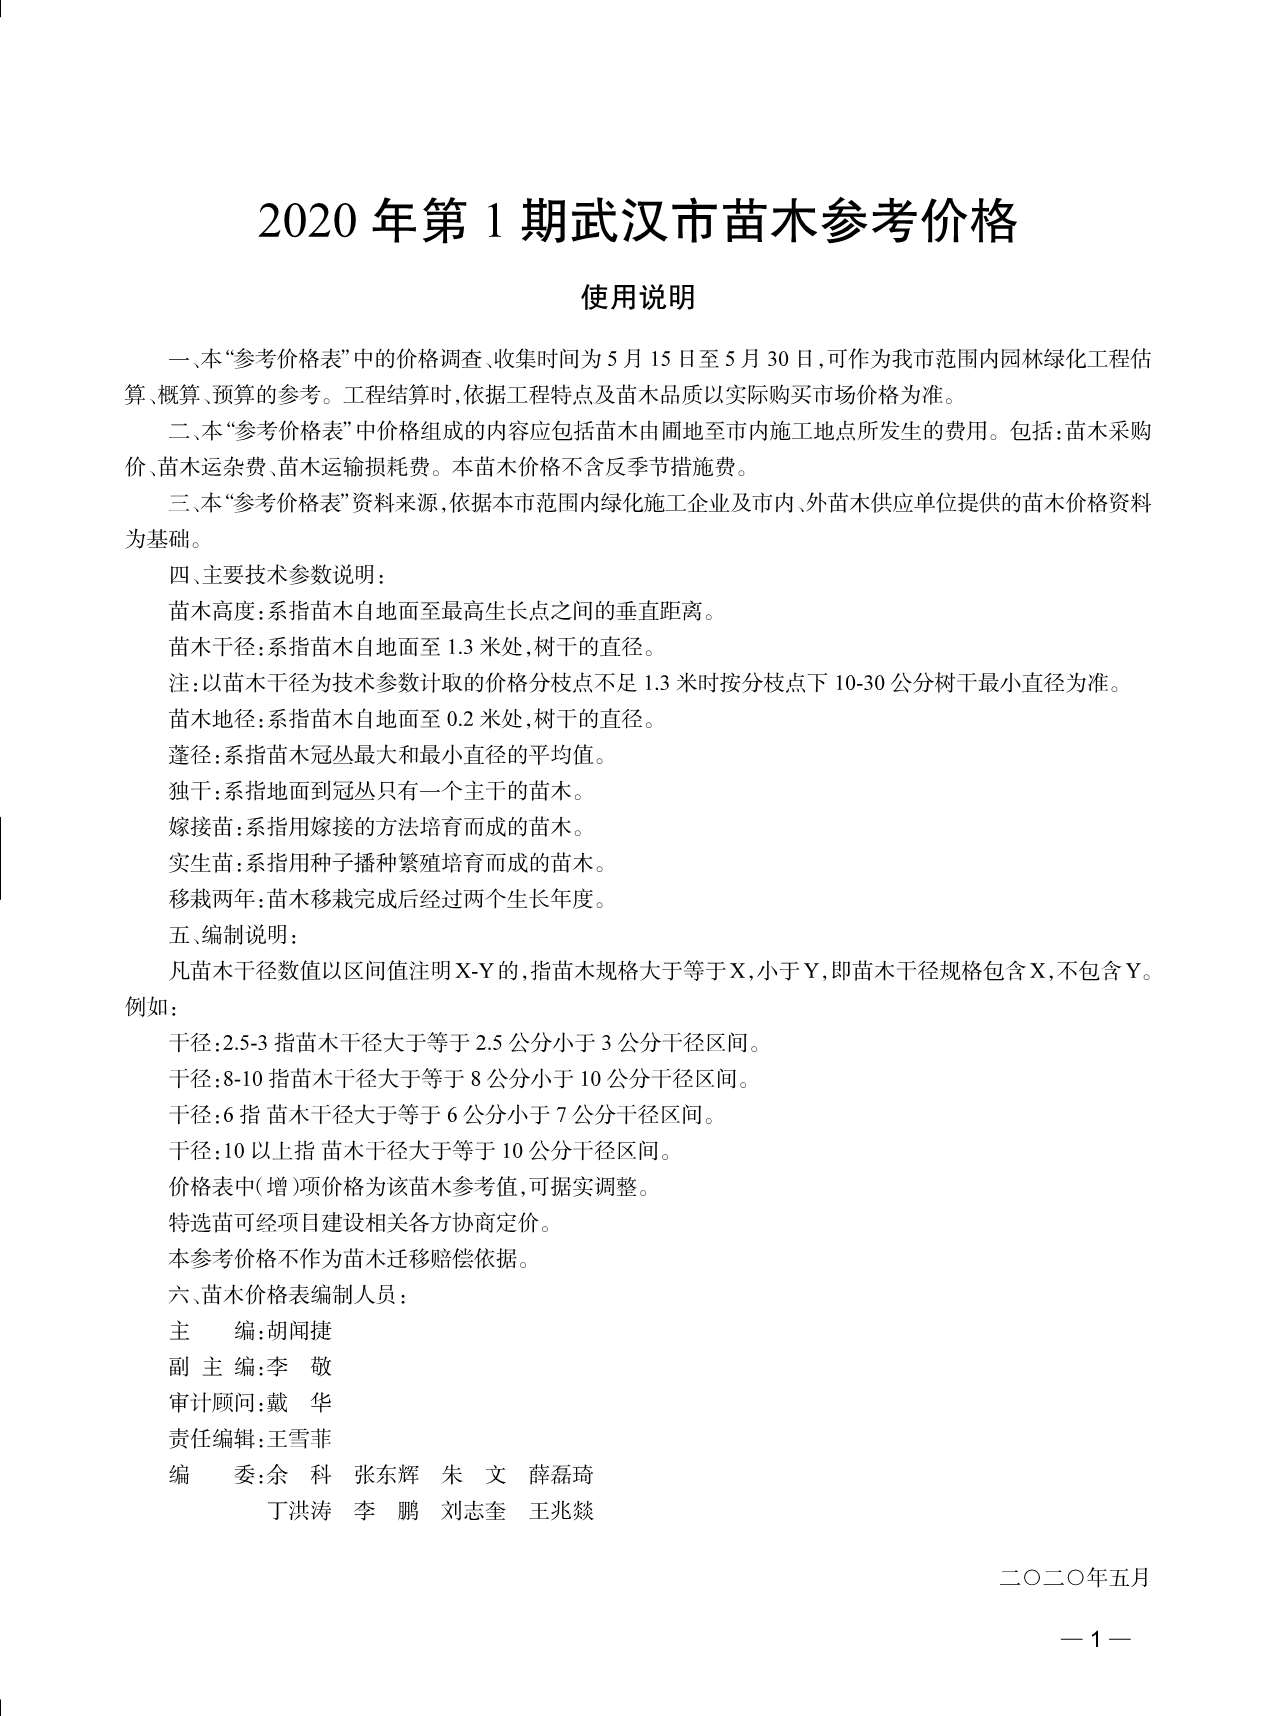 武汉市2020年1月苗木参考价格